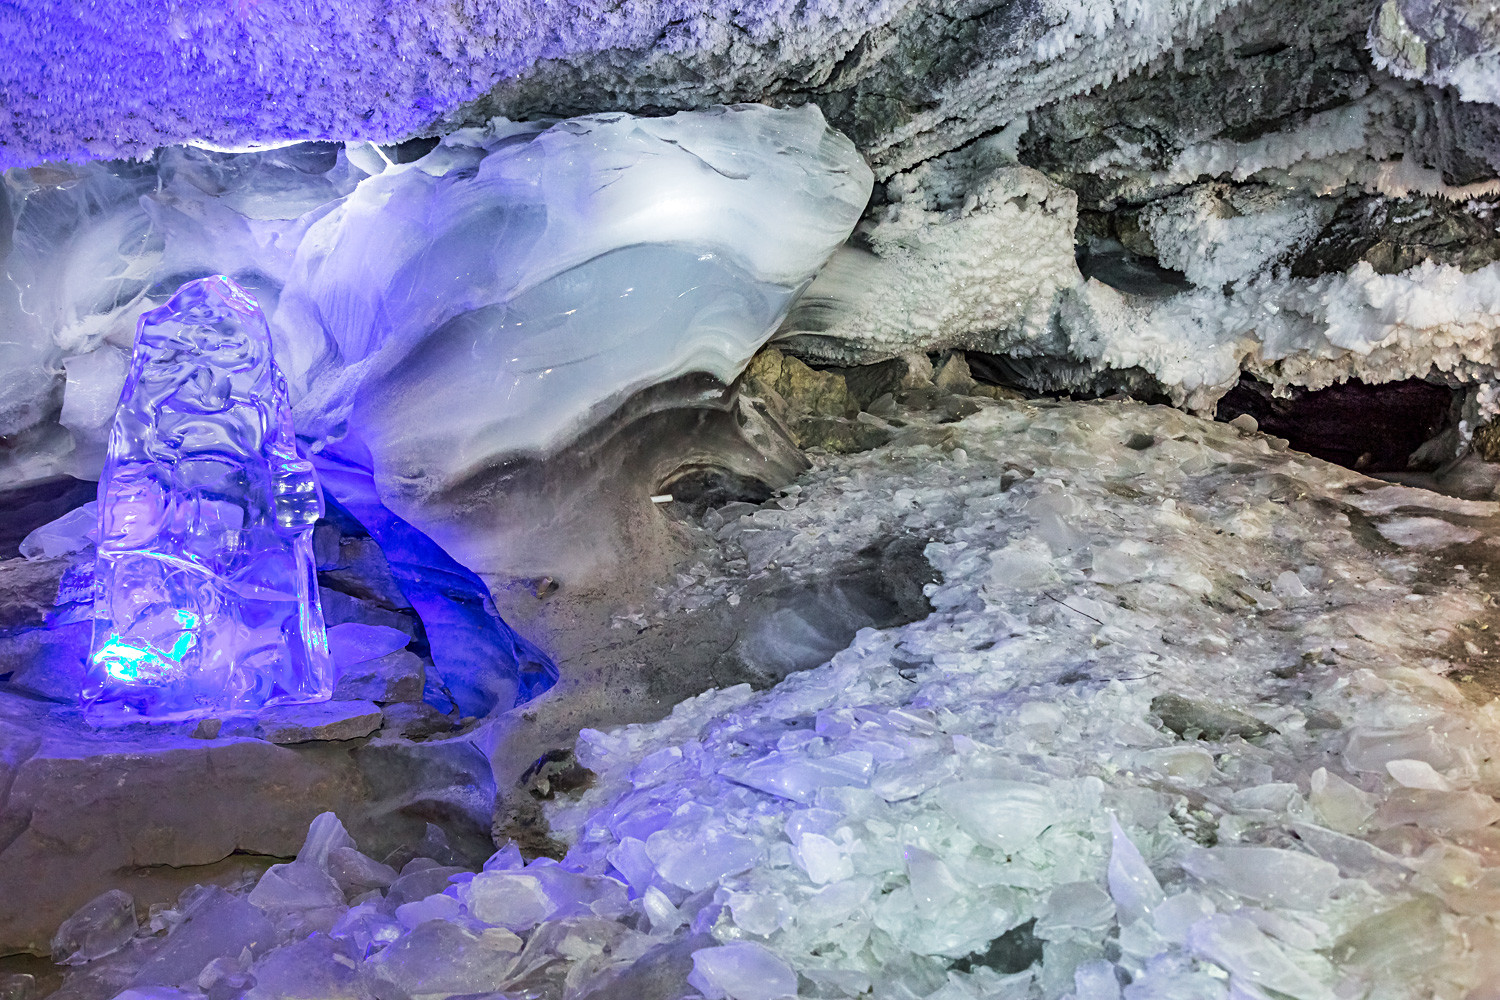 Die älteste, touristisch erschlossene Höhle Russlands liegt etwa 50 Kilometer von Perm entfernt. Entdeckt wurde sie 1703 während einer Expedition des sibirischen Historikers Semjon Remesow. Einheimische erzählten ihm damals, der mysteriöse sibirische Herrscher Jermak überwintere in jenen Höhlen.